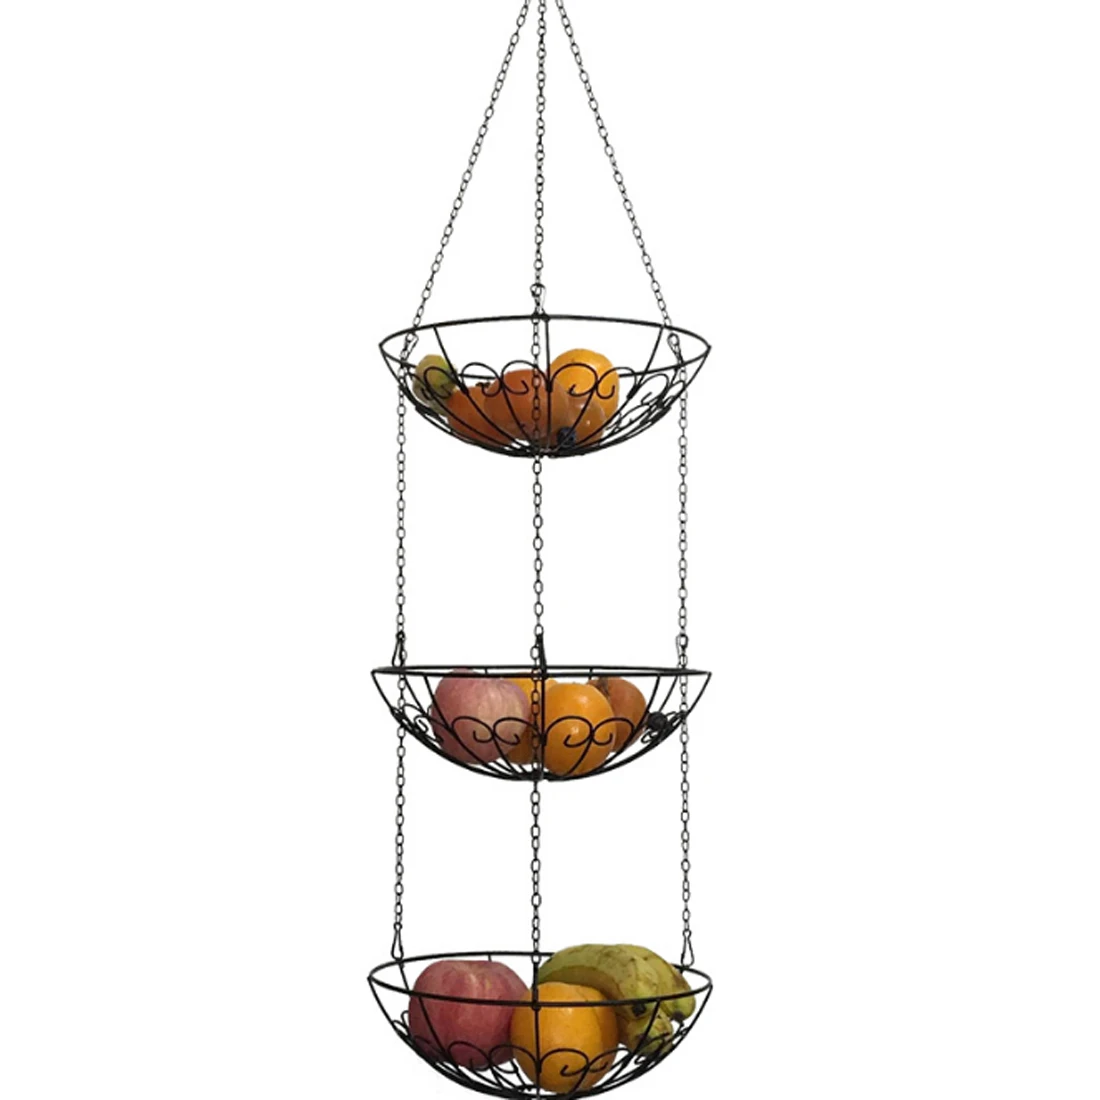 Современный Стиль хранения подставки в виде корзин 3-х уровневая висит кухонный, для овощей корзина для хранения фруктов стойка держатель с железной цепи Лидер продаж